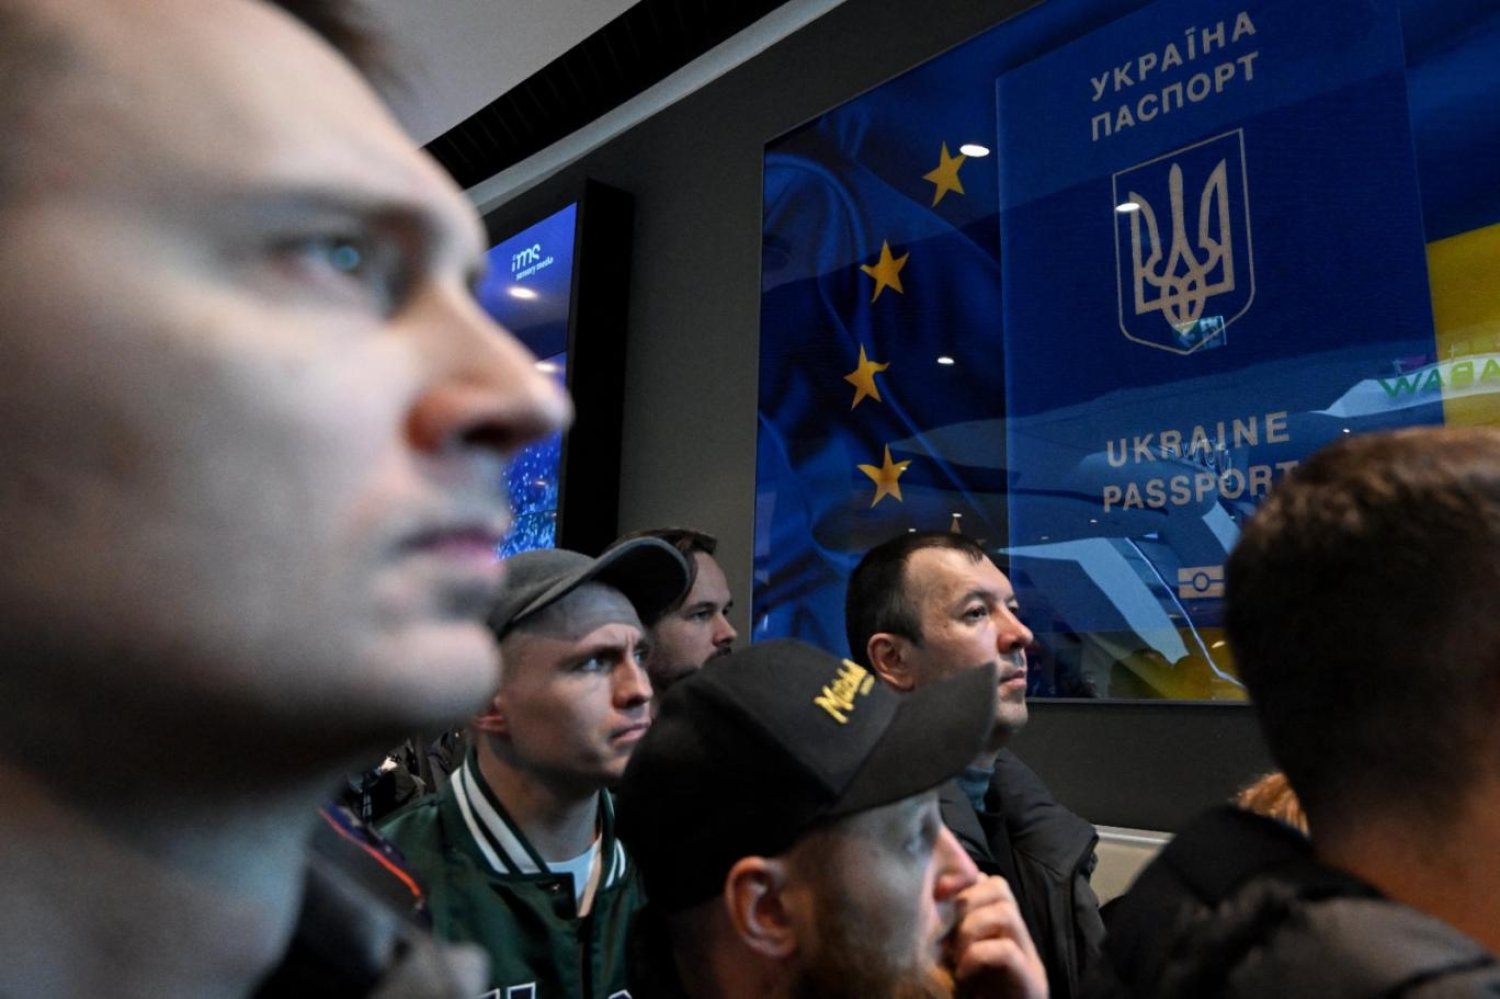 Polonya'nın Varşova kentindeki bir alışveriş merkezinde Ukraynalılar, Ukrayna'nın pasaport hizmet noktasının kapalı kapıları önünde (AFP)